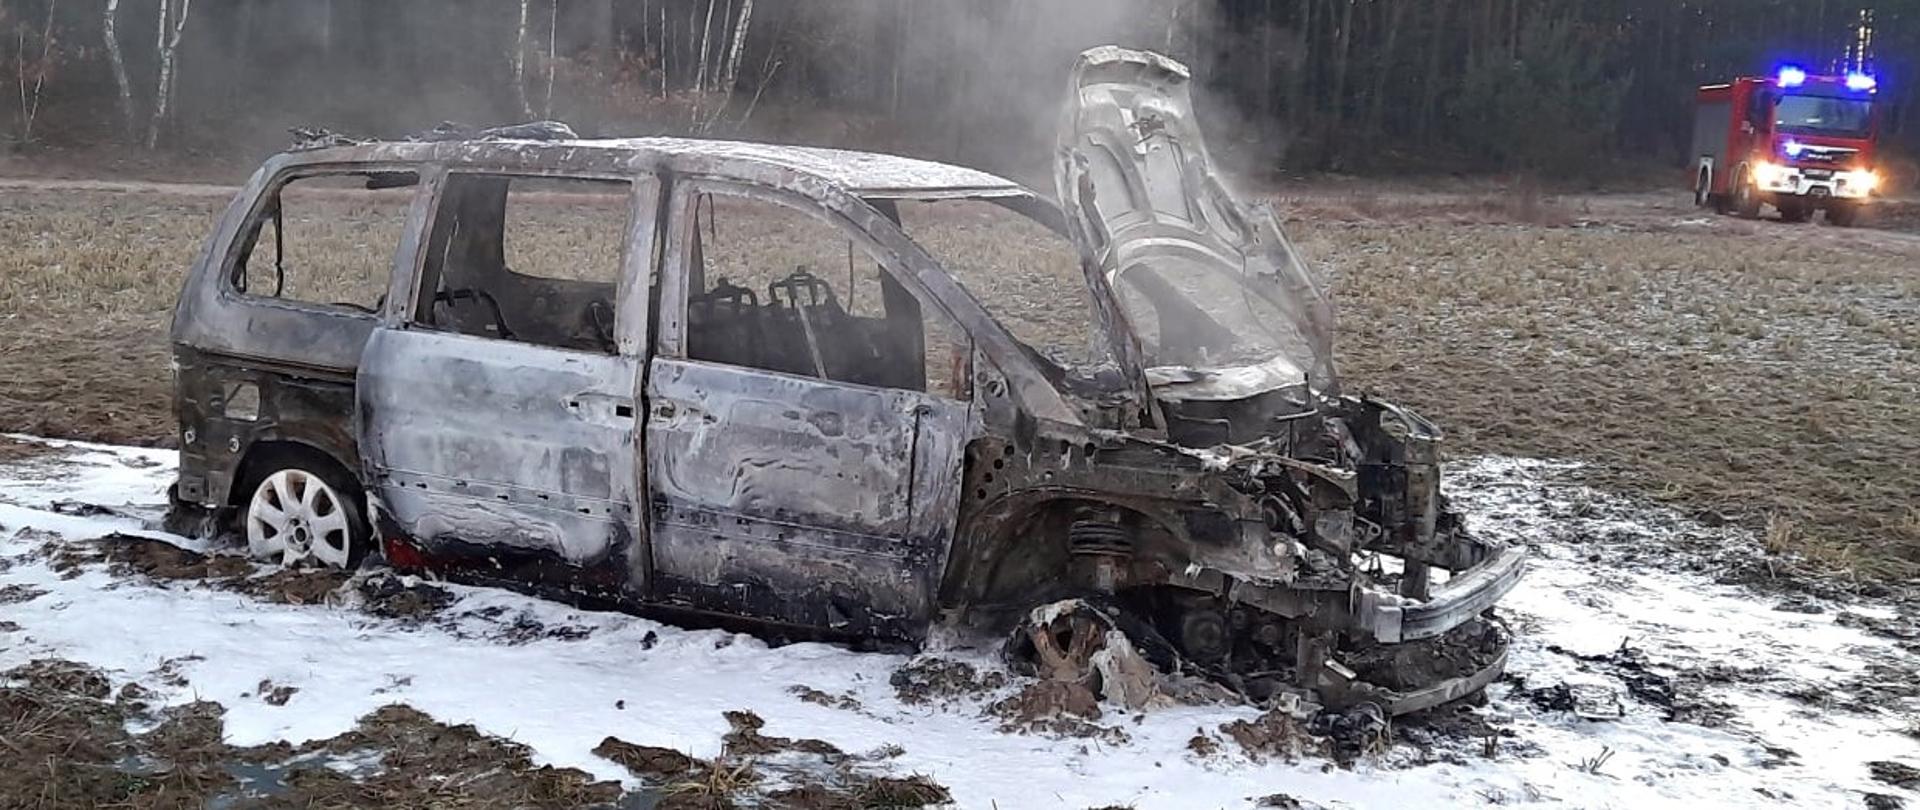 Na zdjęciu widoczny spalony wrak samochodu osobowego stojący w polu. Na drugim planie samochód gaśniczy straży pożarnej z włączonymi sygnałami błyskowymi.